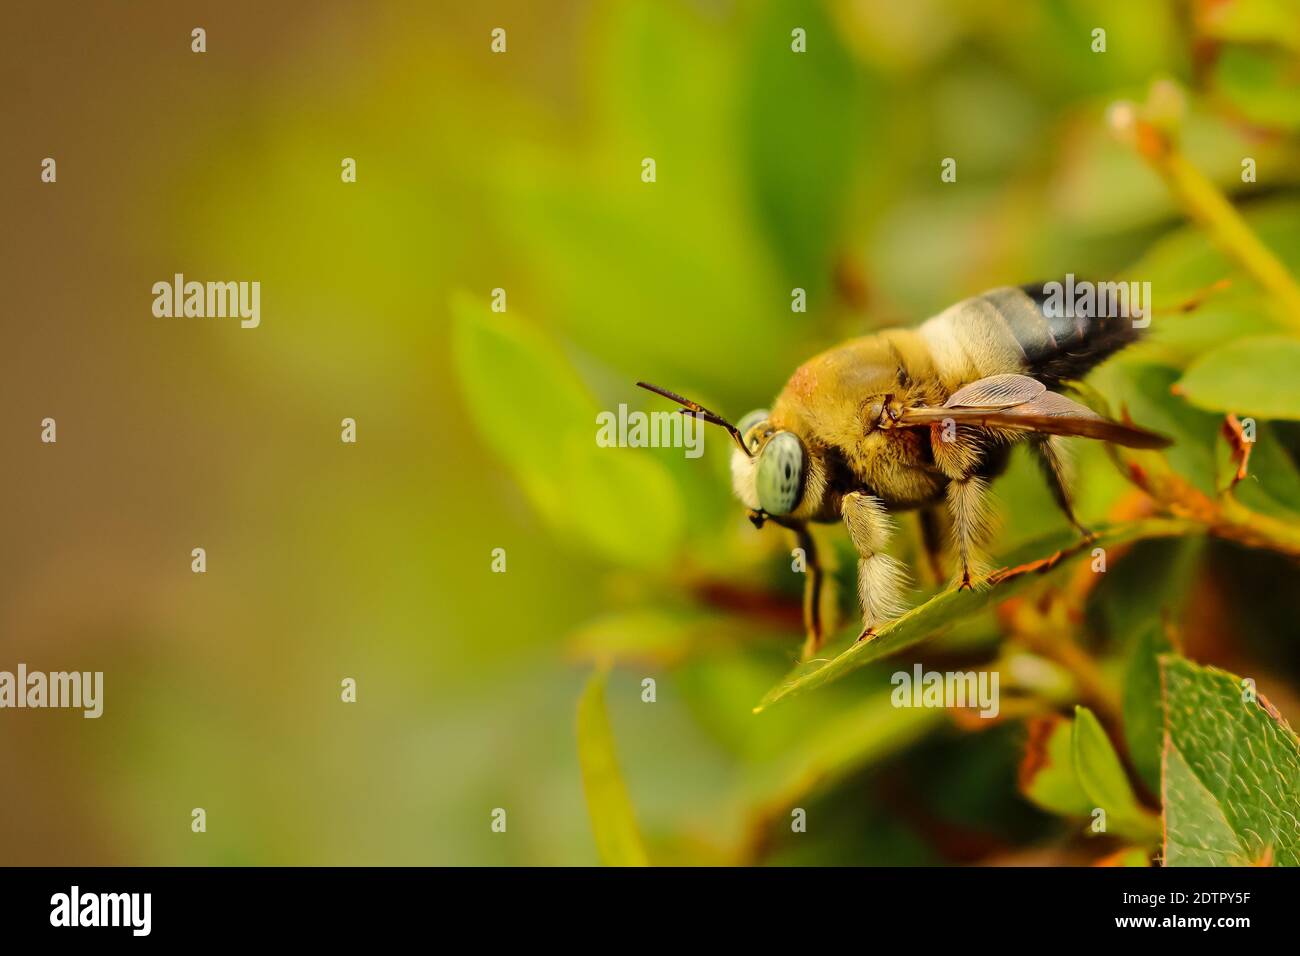 Macro enfoque selectivo imagen de una sola abeja de miel sobre hojas verdes con fondo borroso Foto de stock